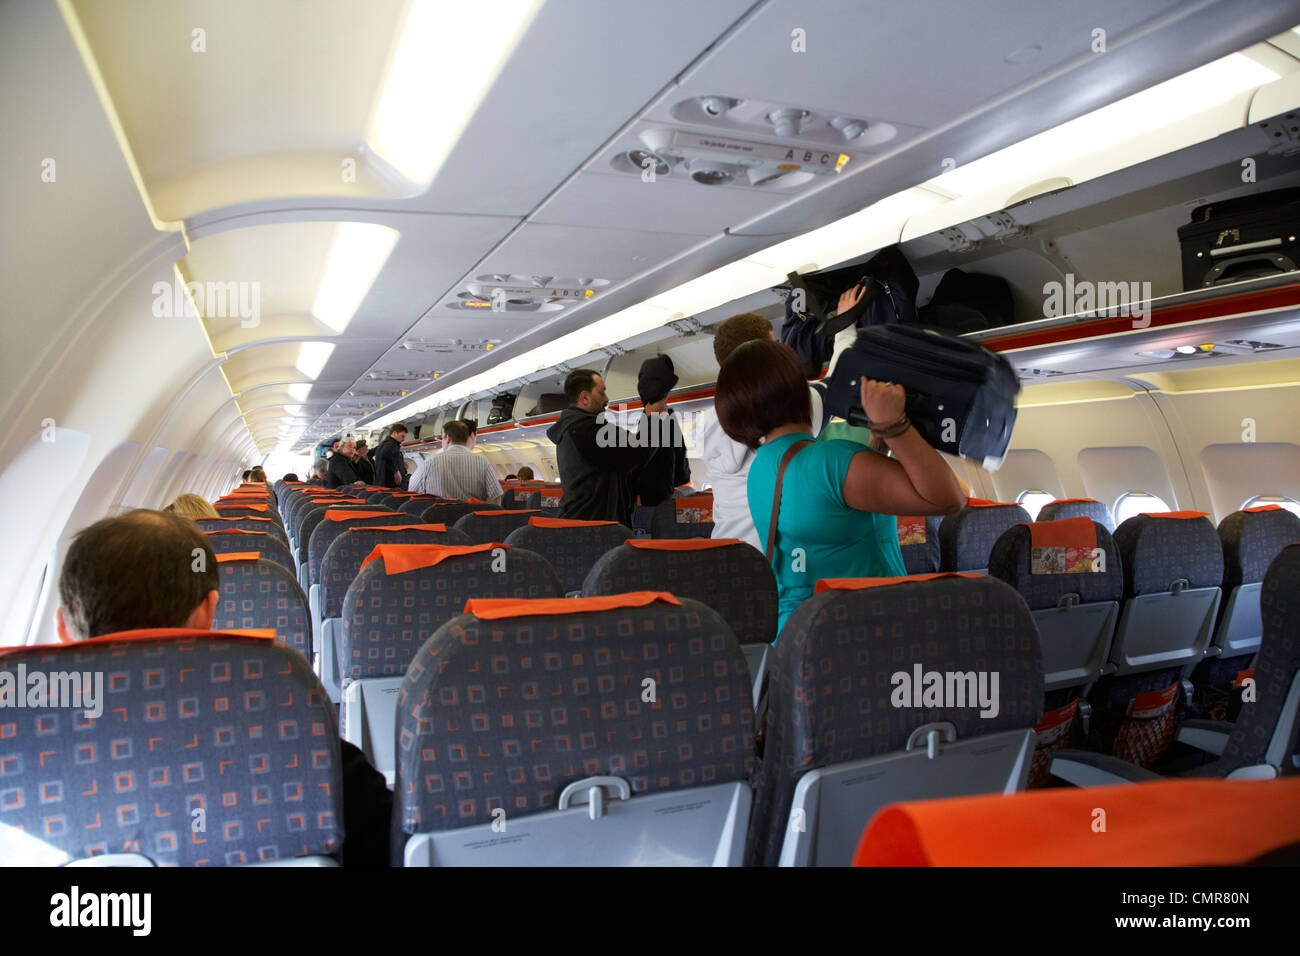 Easyjet cabin luggage -Fotos und -Bildmaterial in hoher Auflösung – Alamy